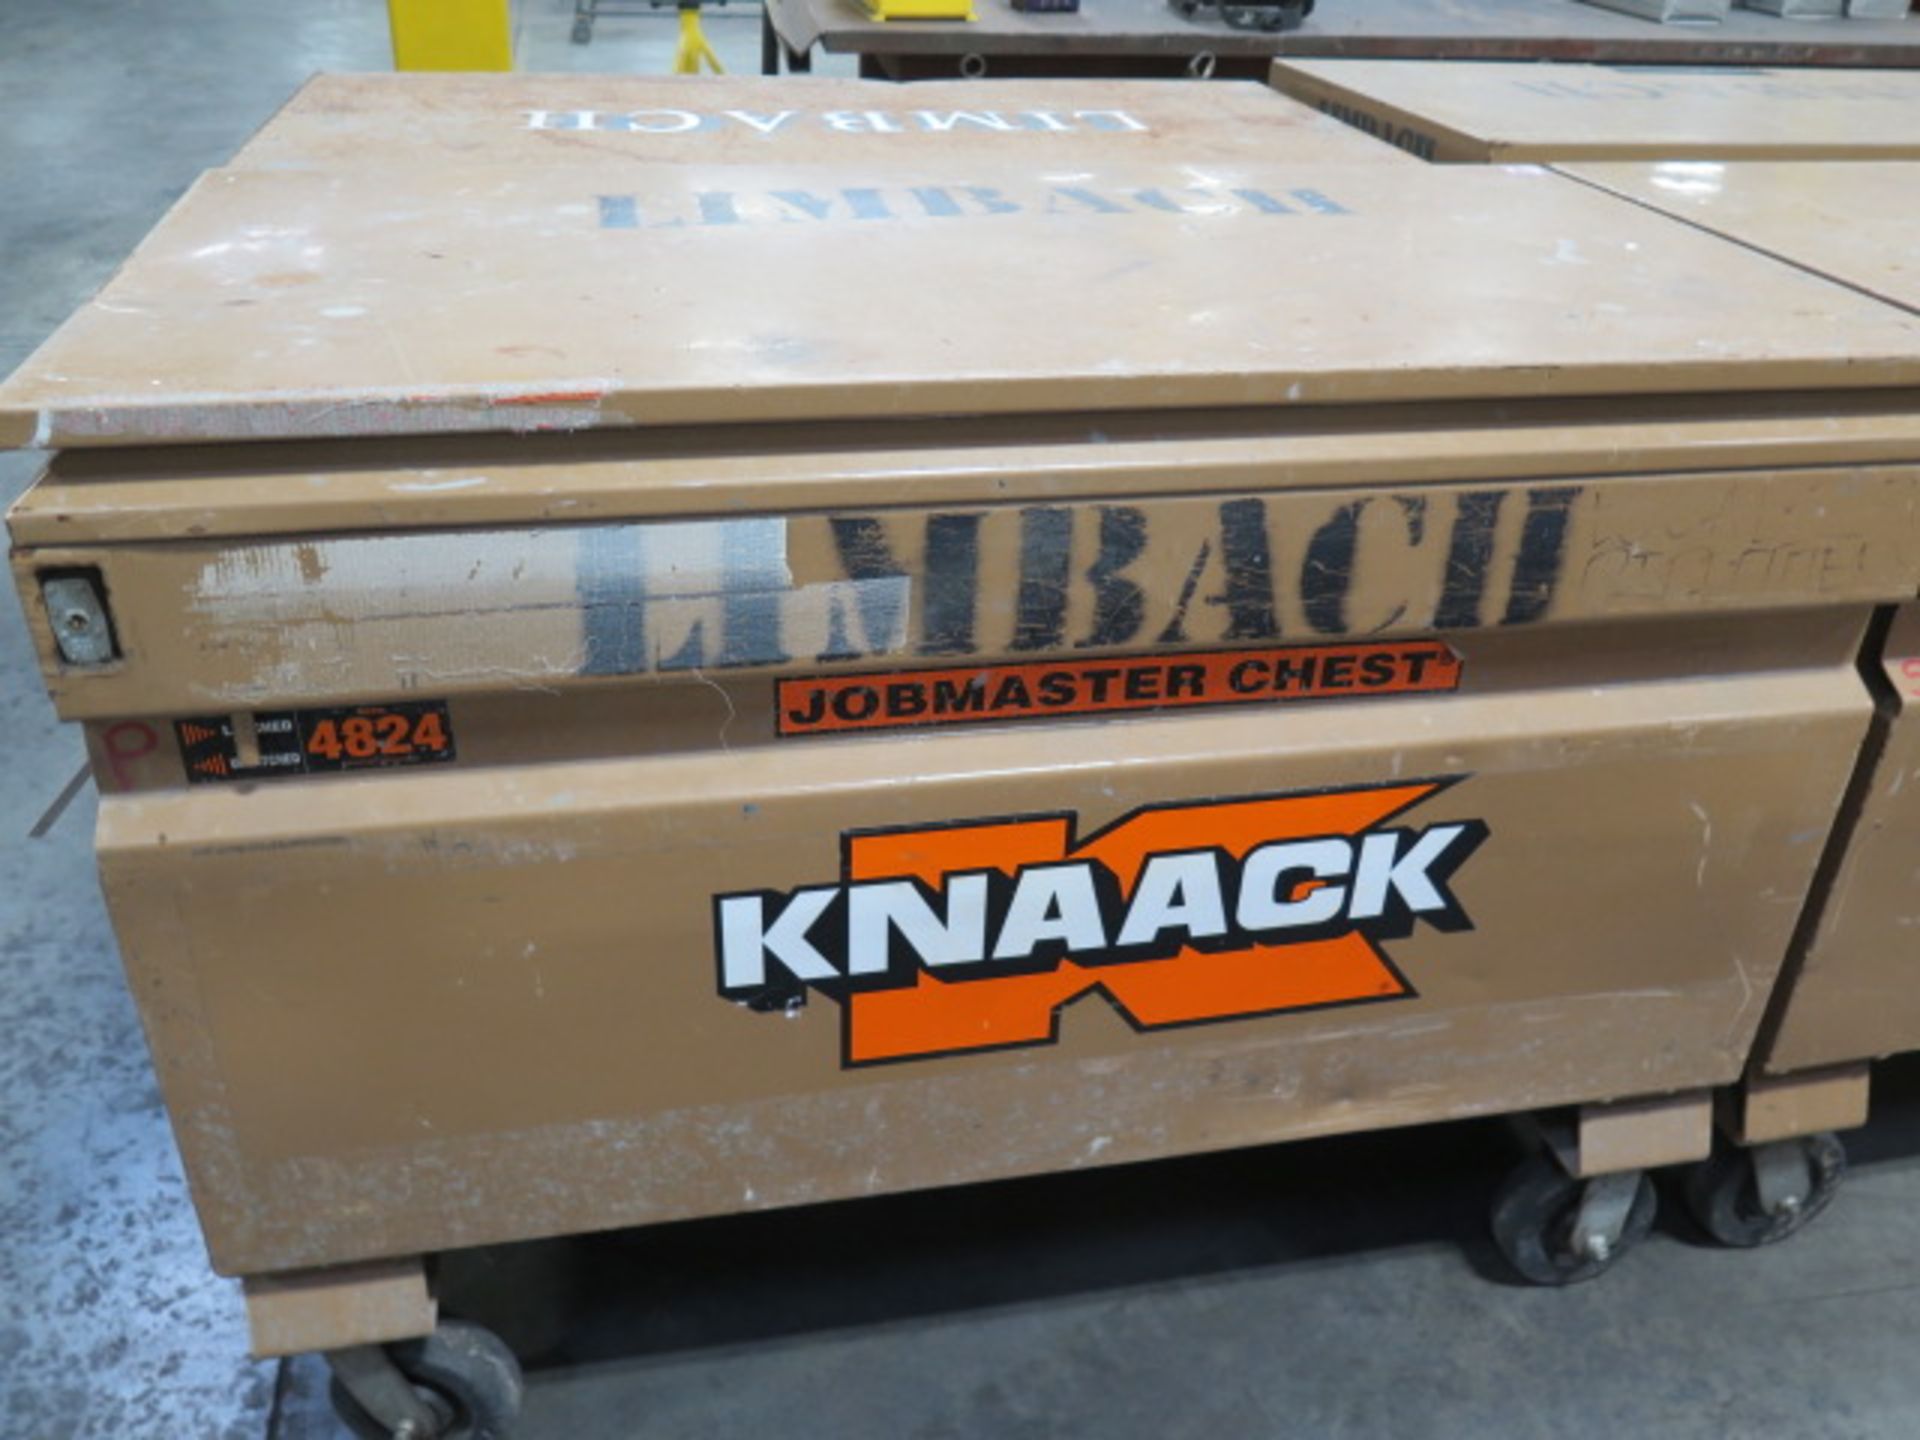 Knaack mdl. 4824 Rolling Job Box (SOLD AS-IS - NO WARRANTY)